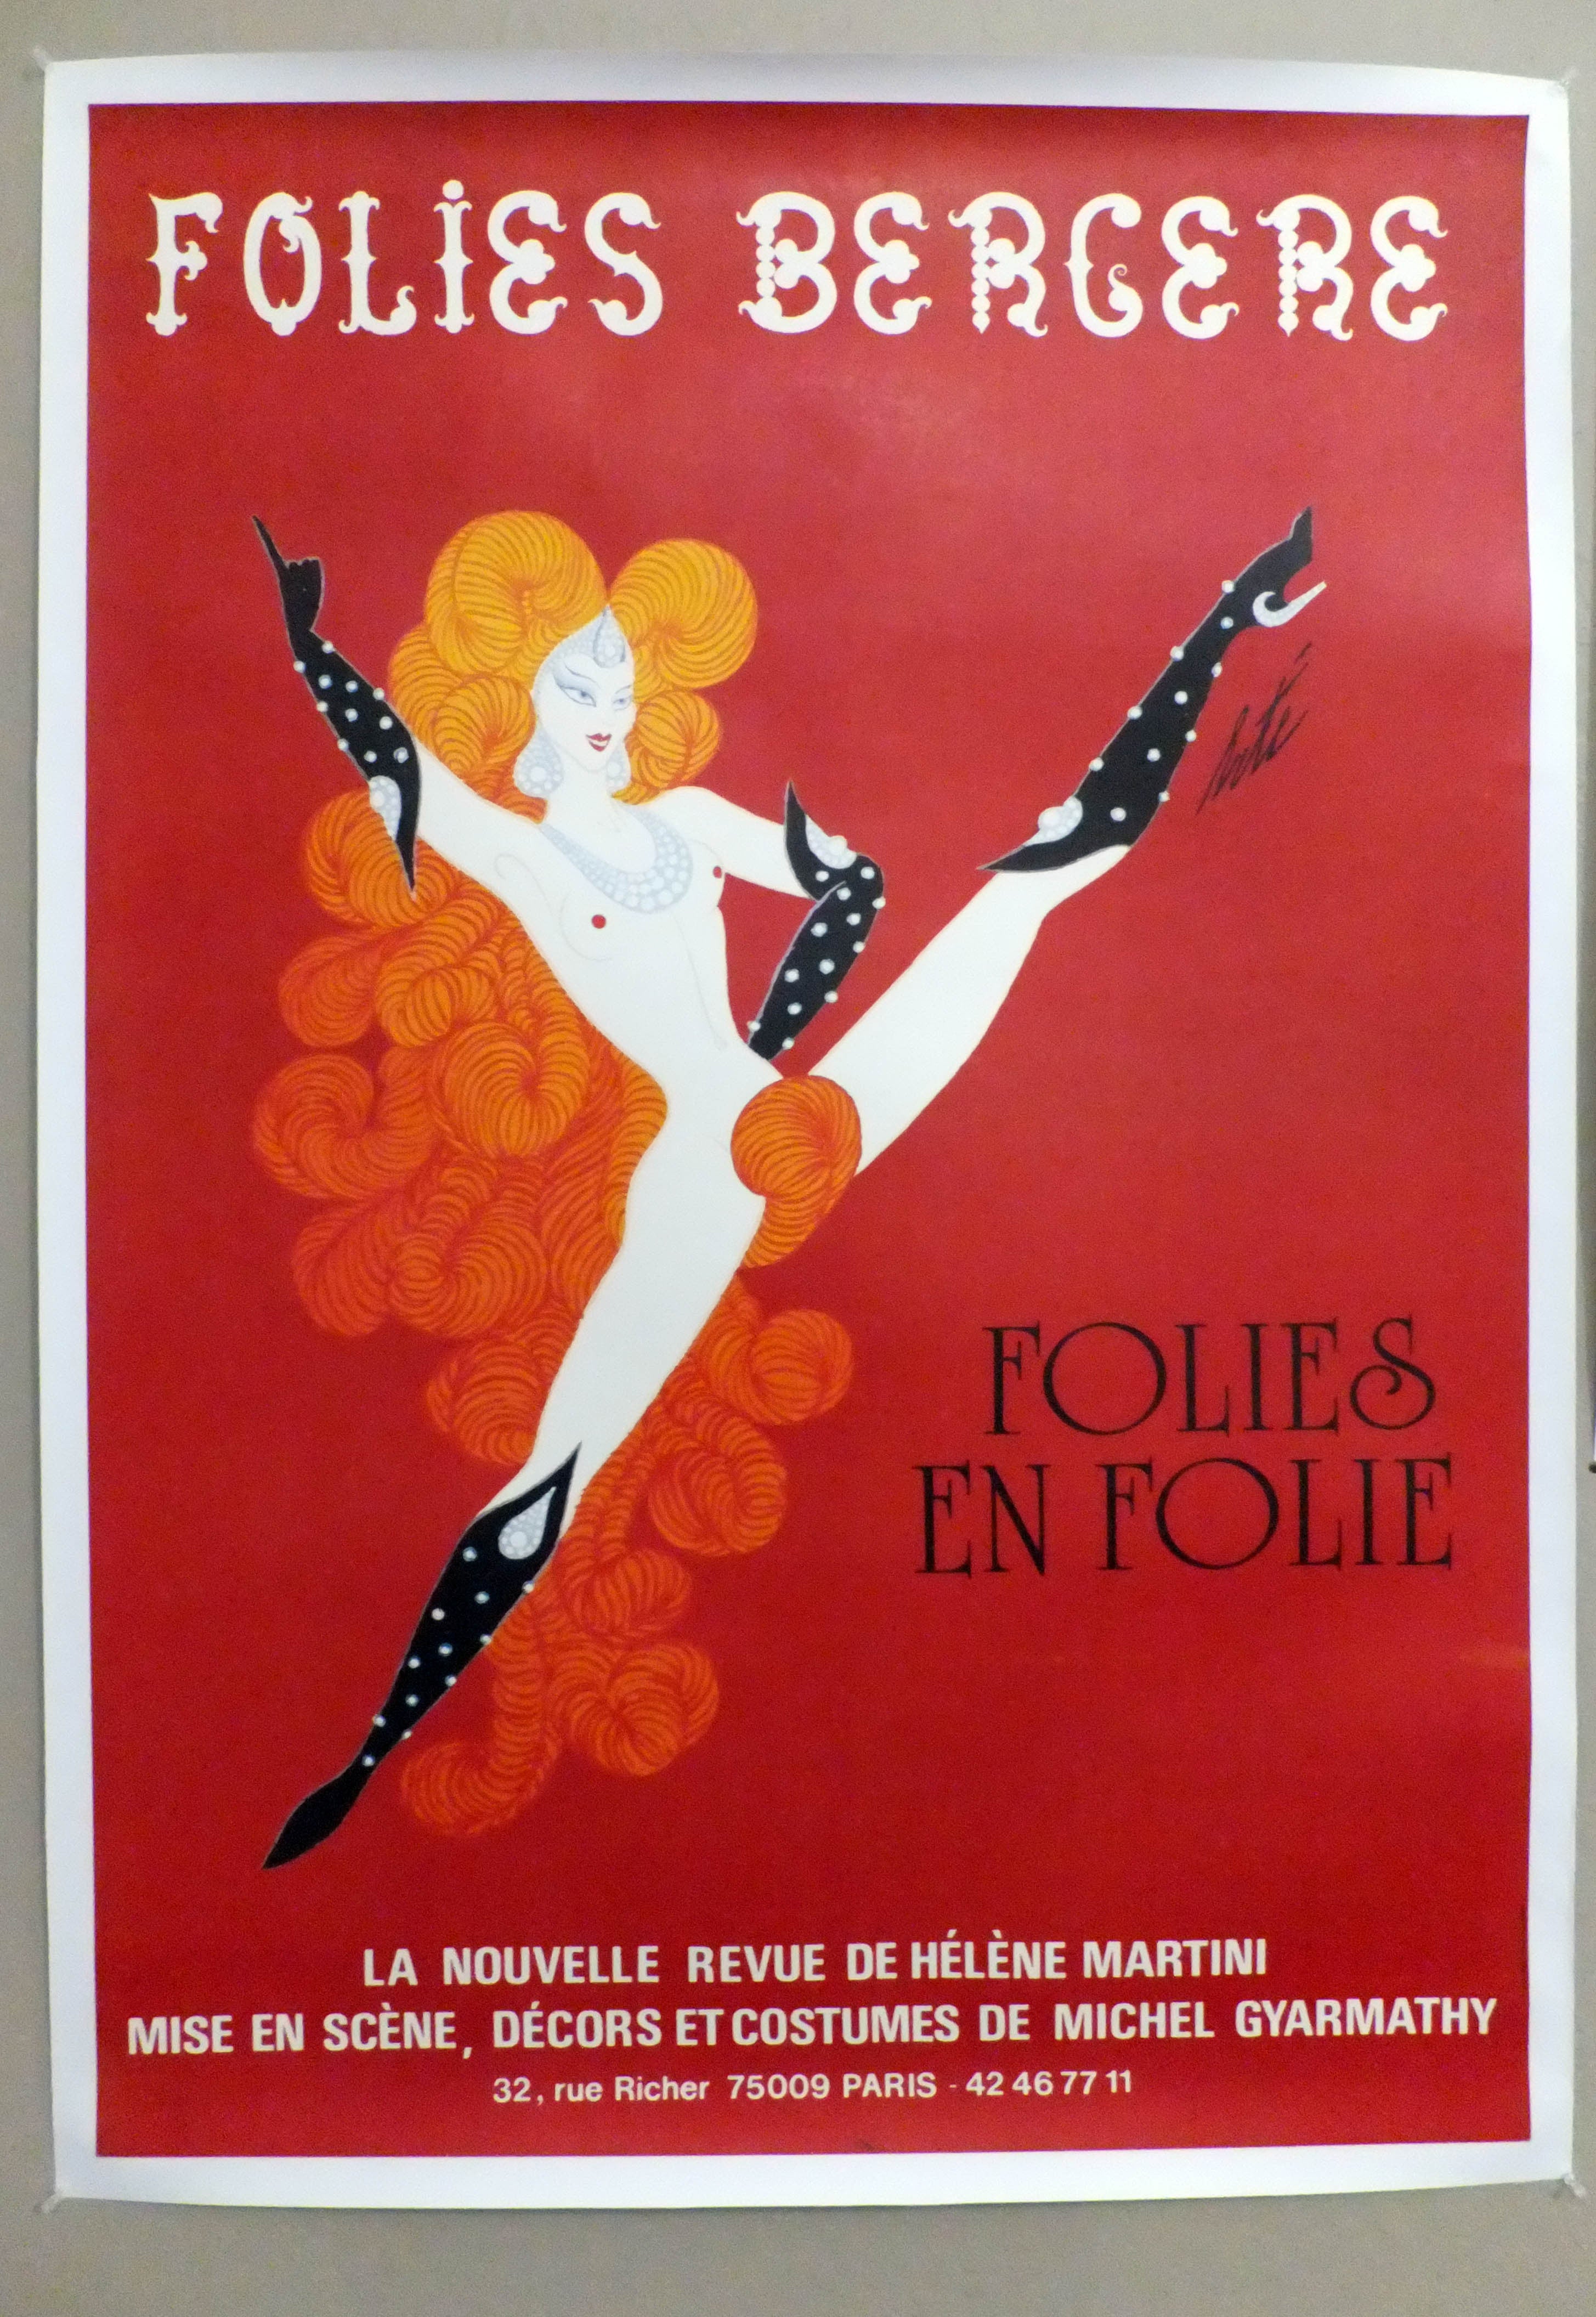 Vintage Folie Bergere Poster by Erte For Sale